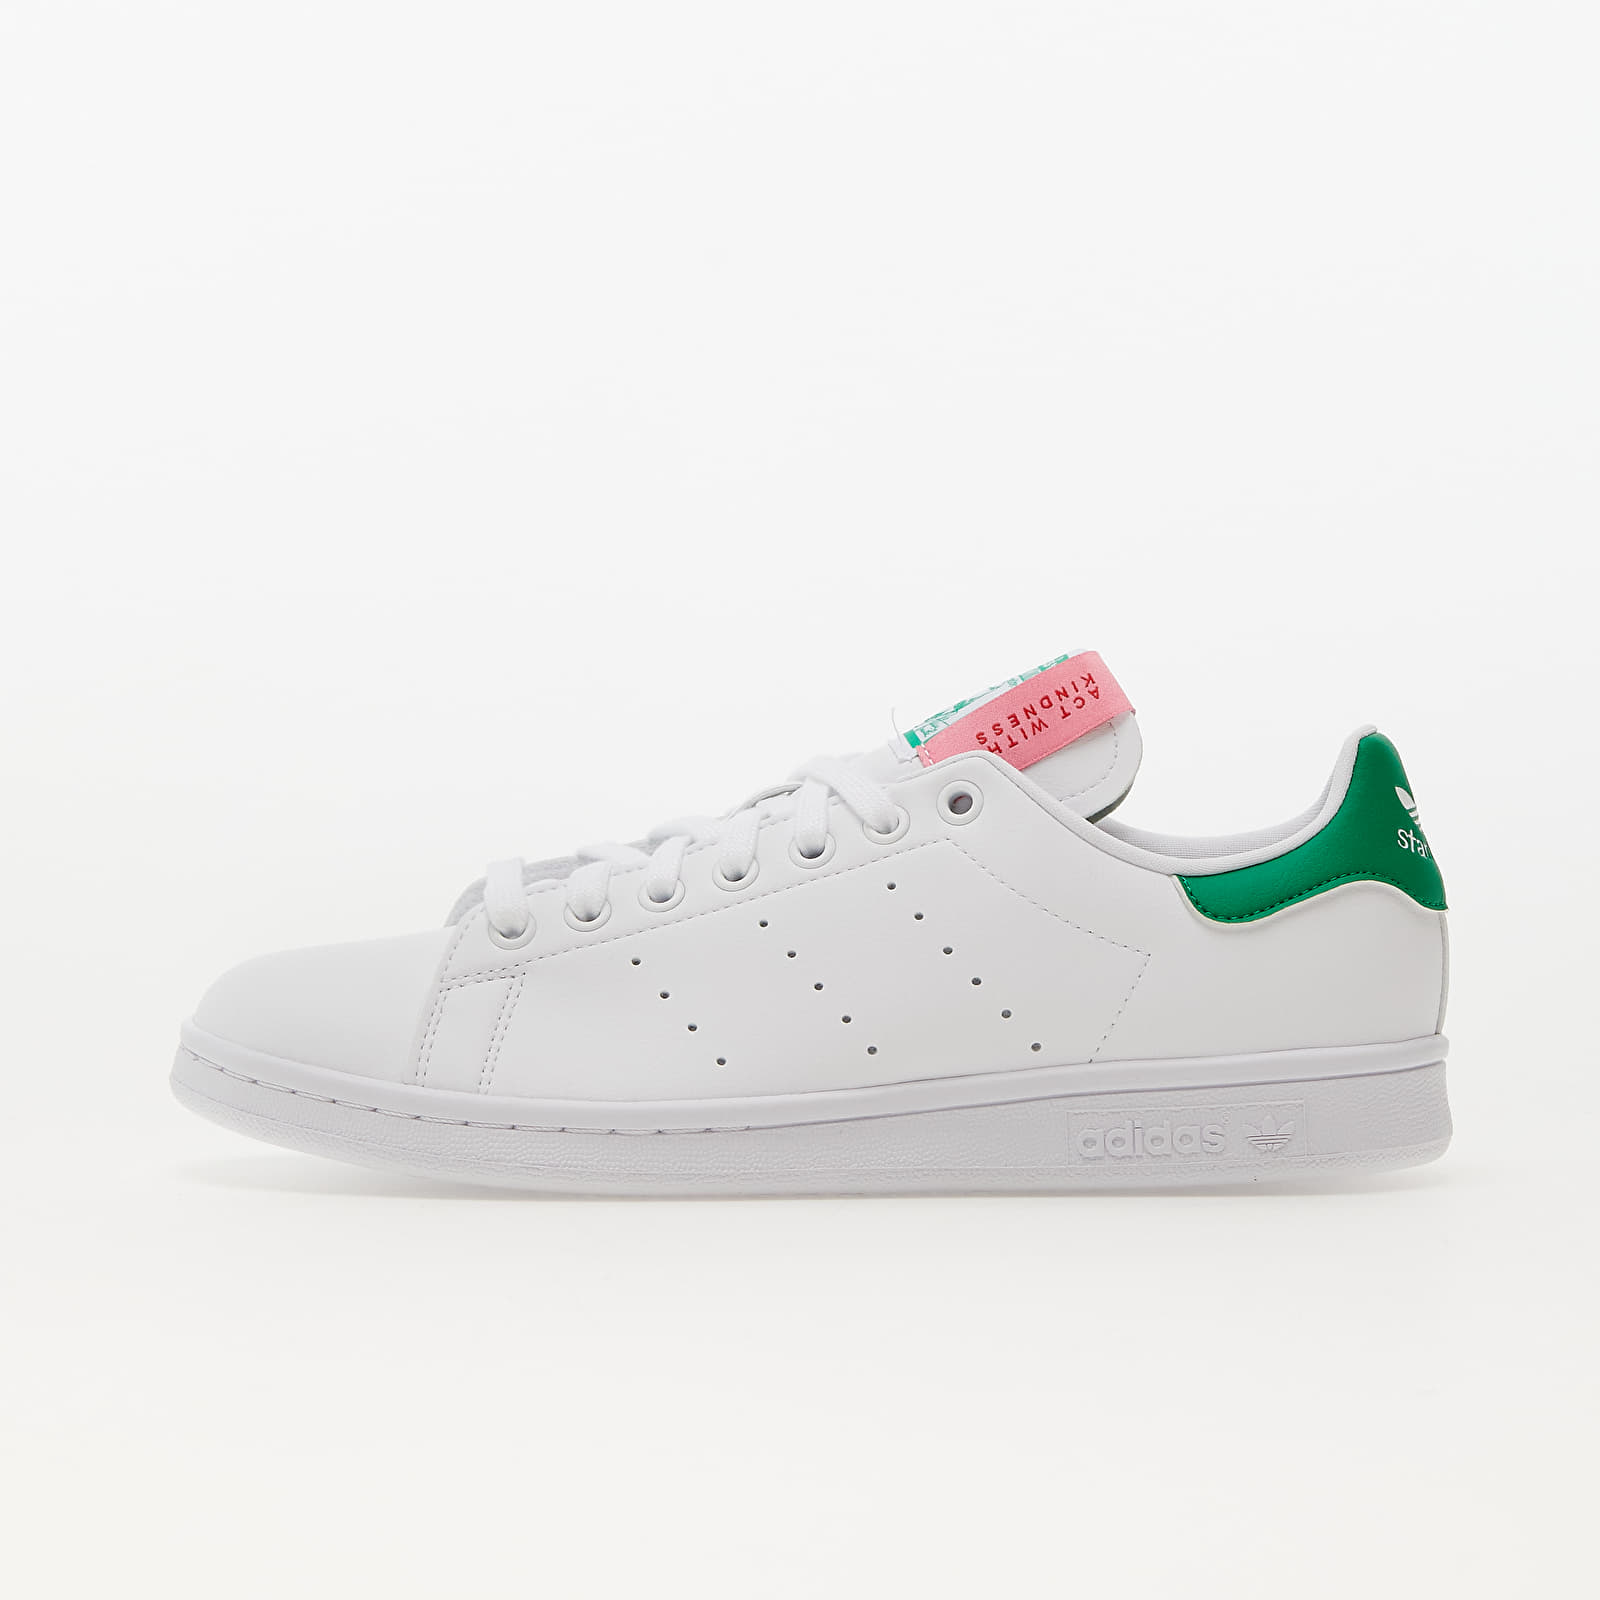 Damen Sneaker und Schuhe adidas Originals Stan Smith W Ftw White/ Green/ Bliss Pink